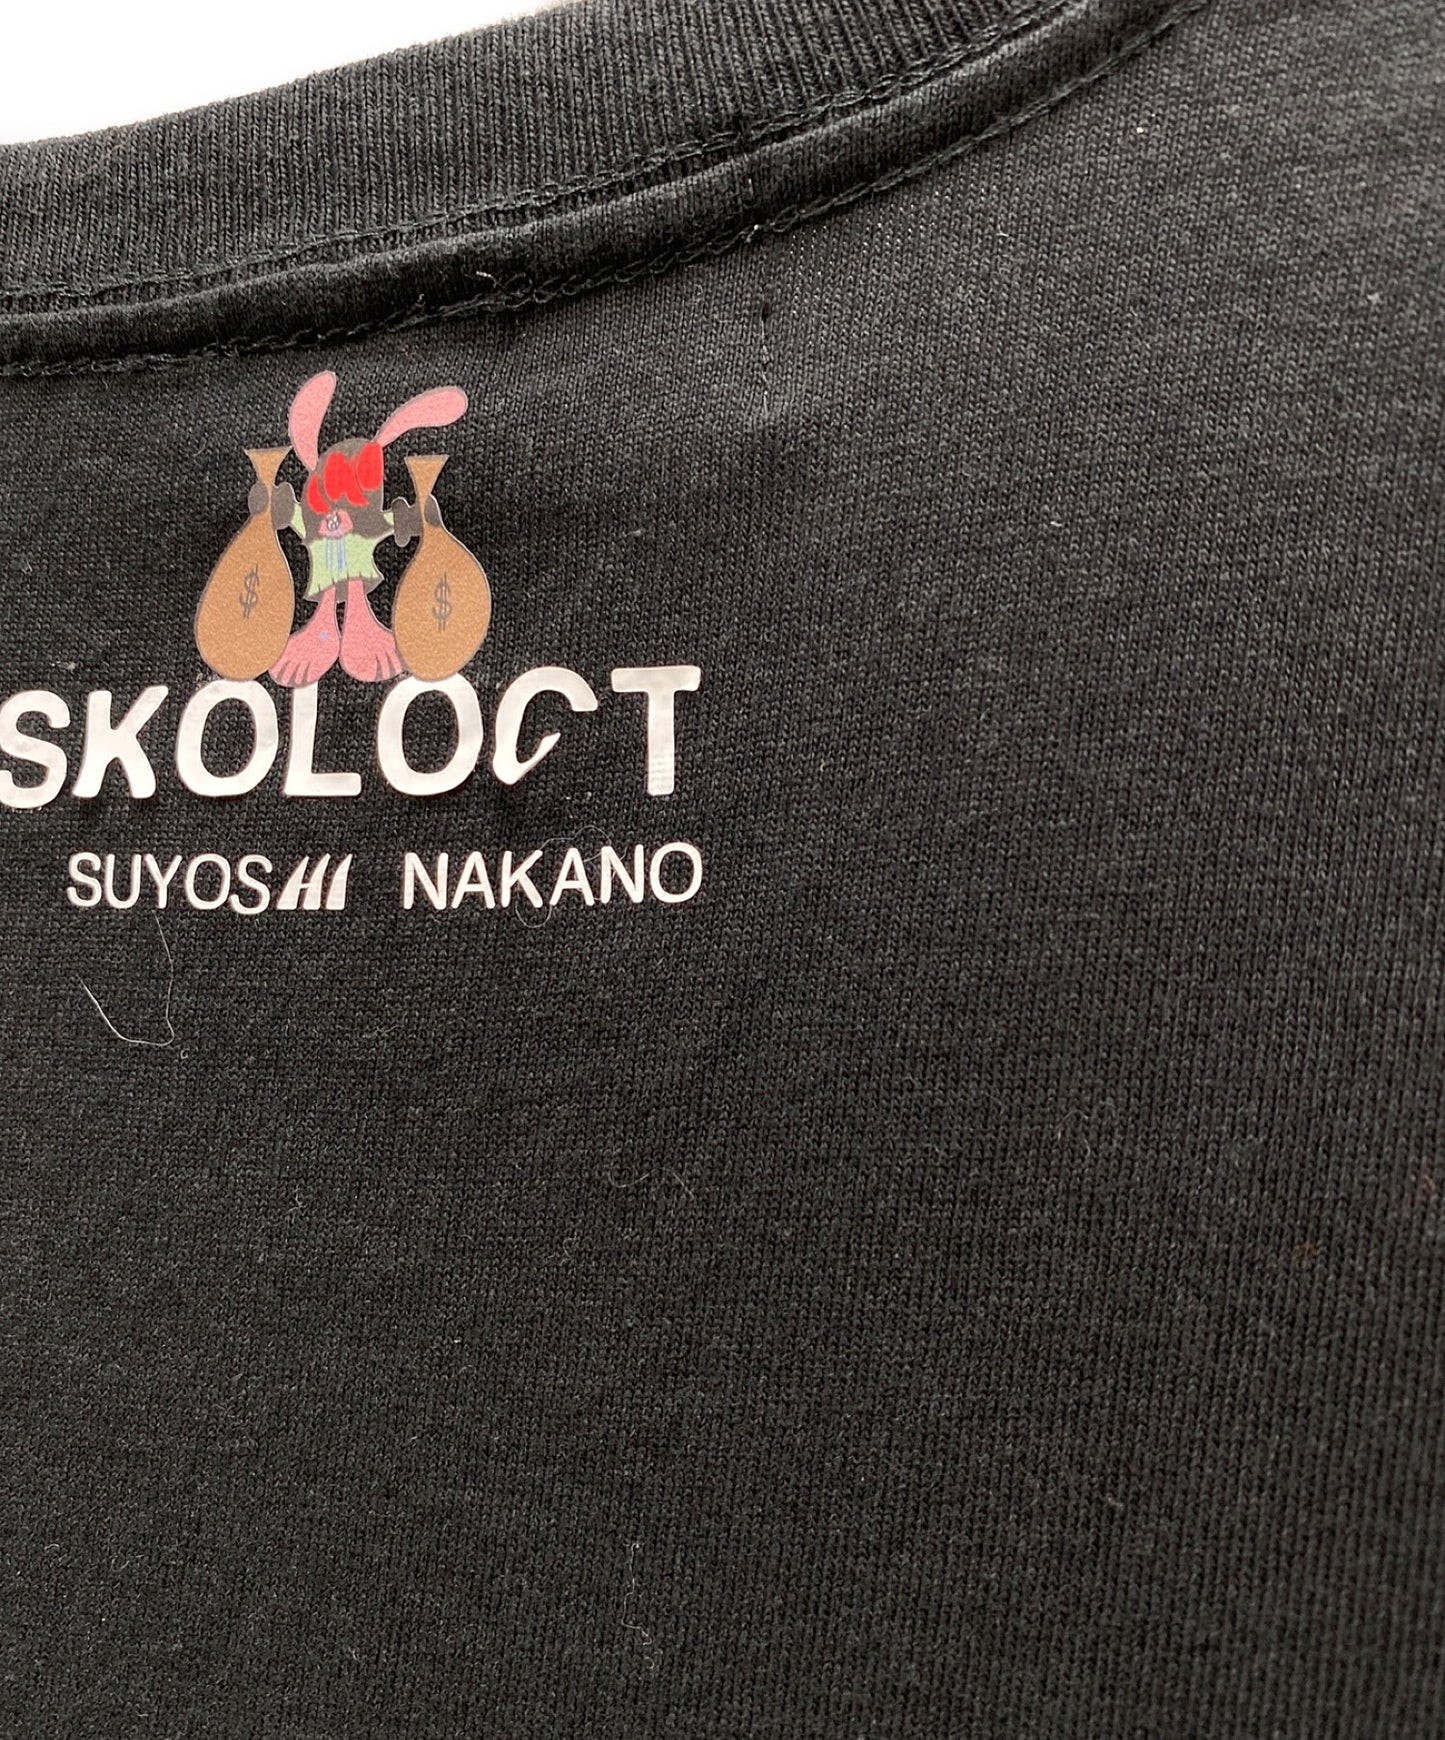 เสื้อยืดพิมพ์ Skoloct